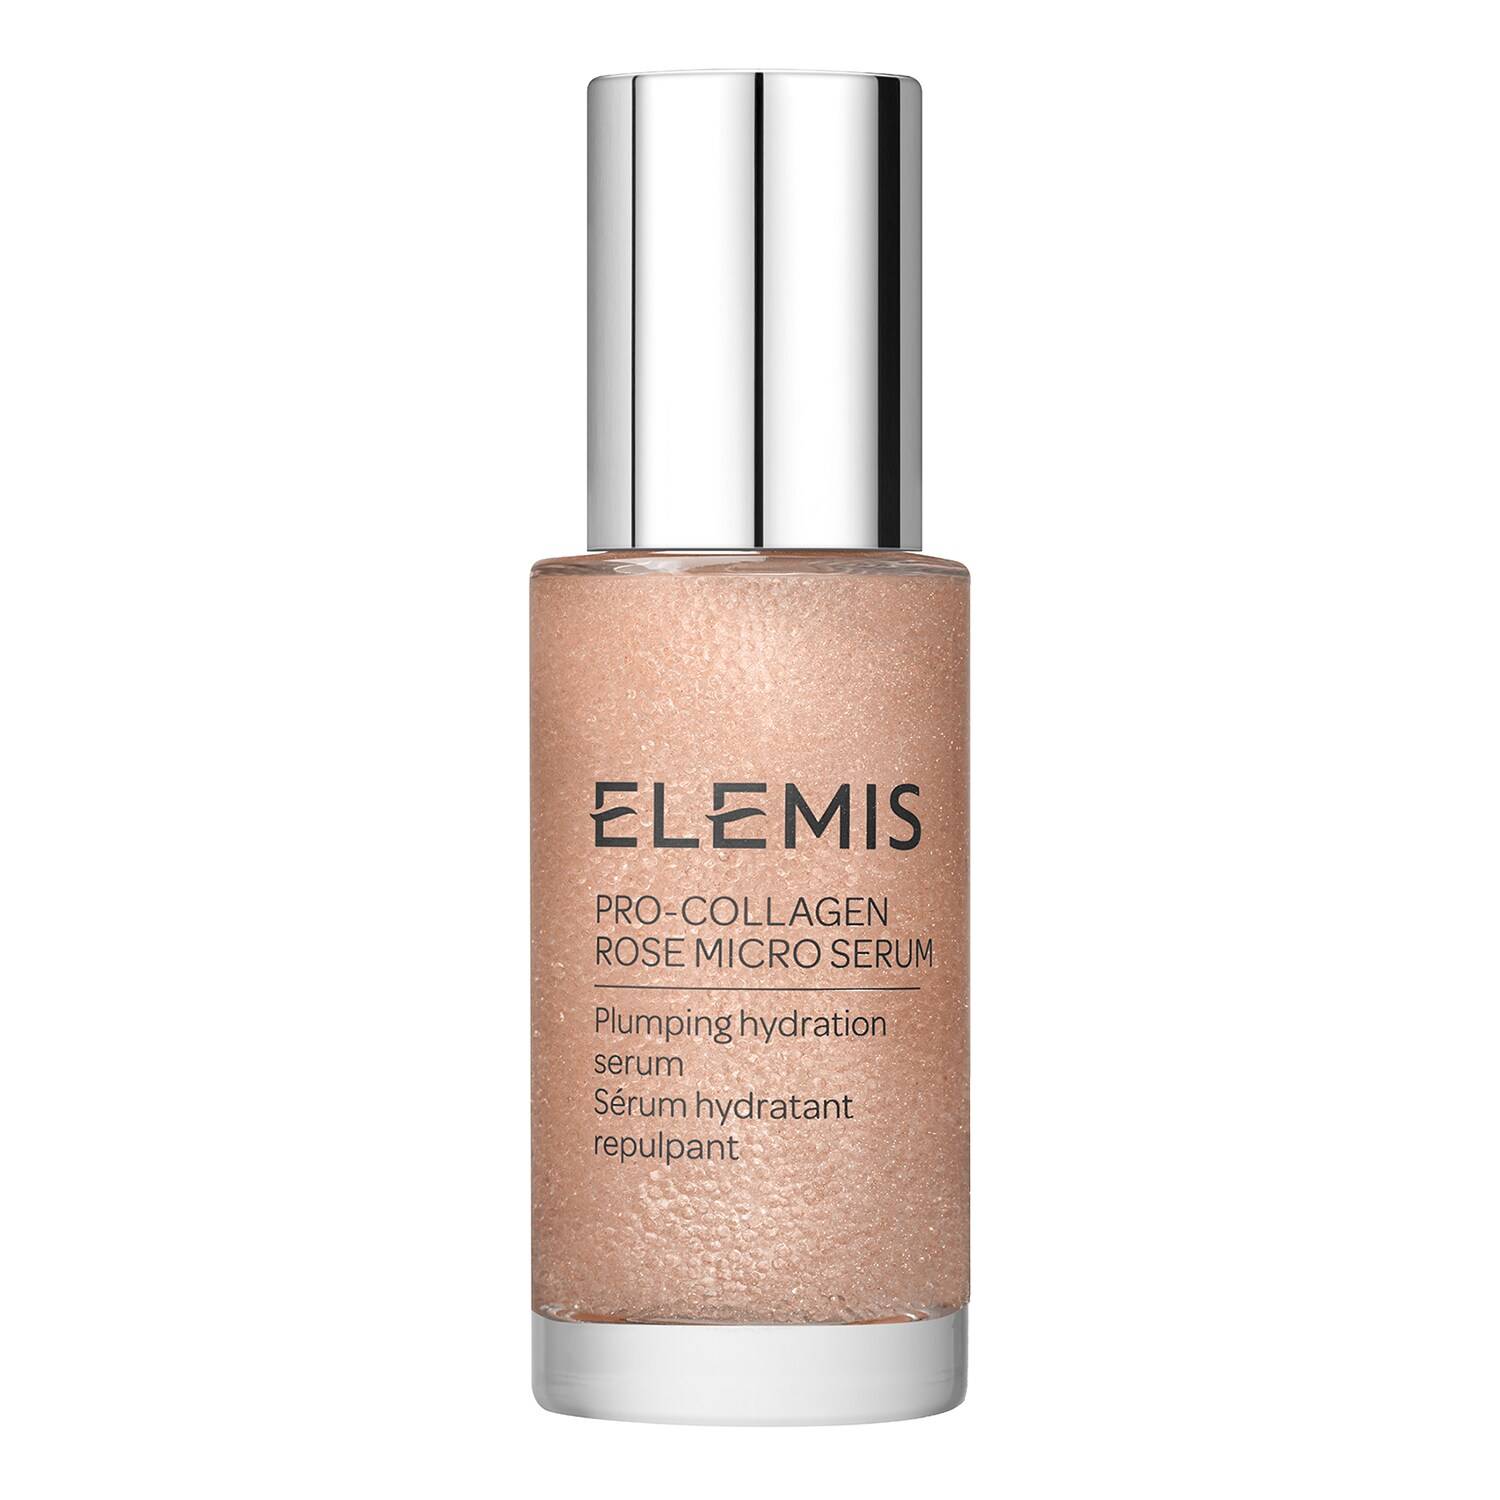 ELEMIS Pro-Collagen Rose Micro Serum 30ml